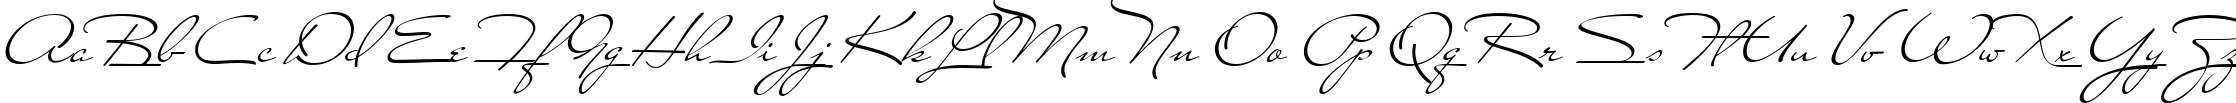 Пример написания английского алфавита шрифтом Carolina